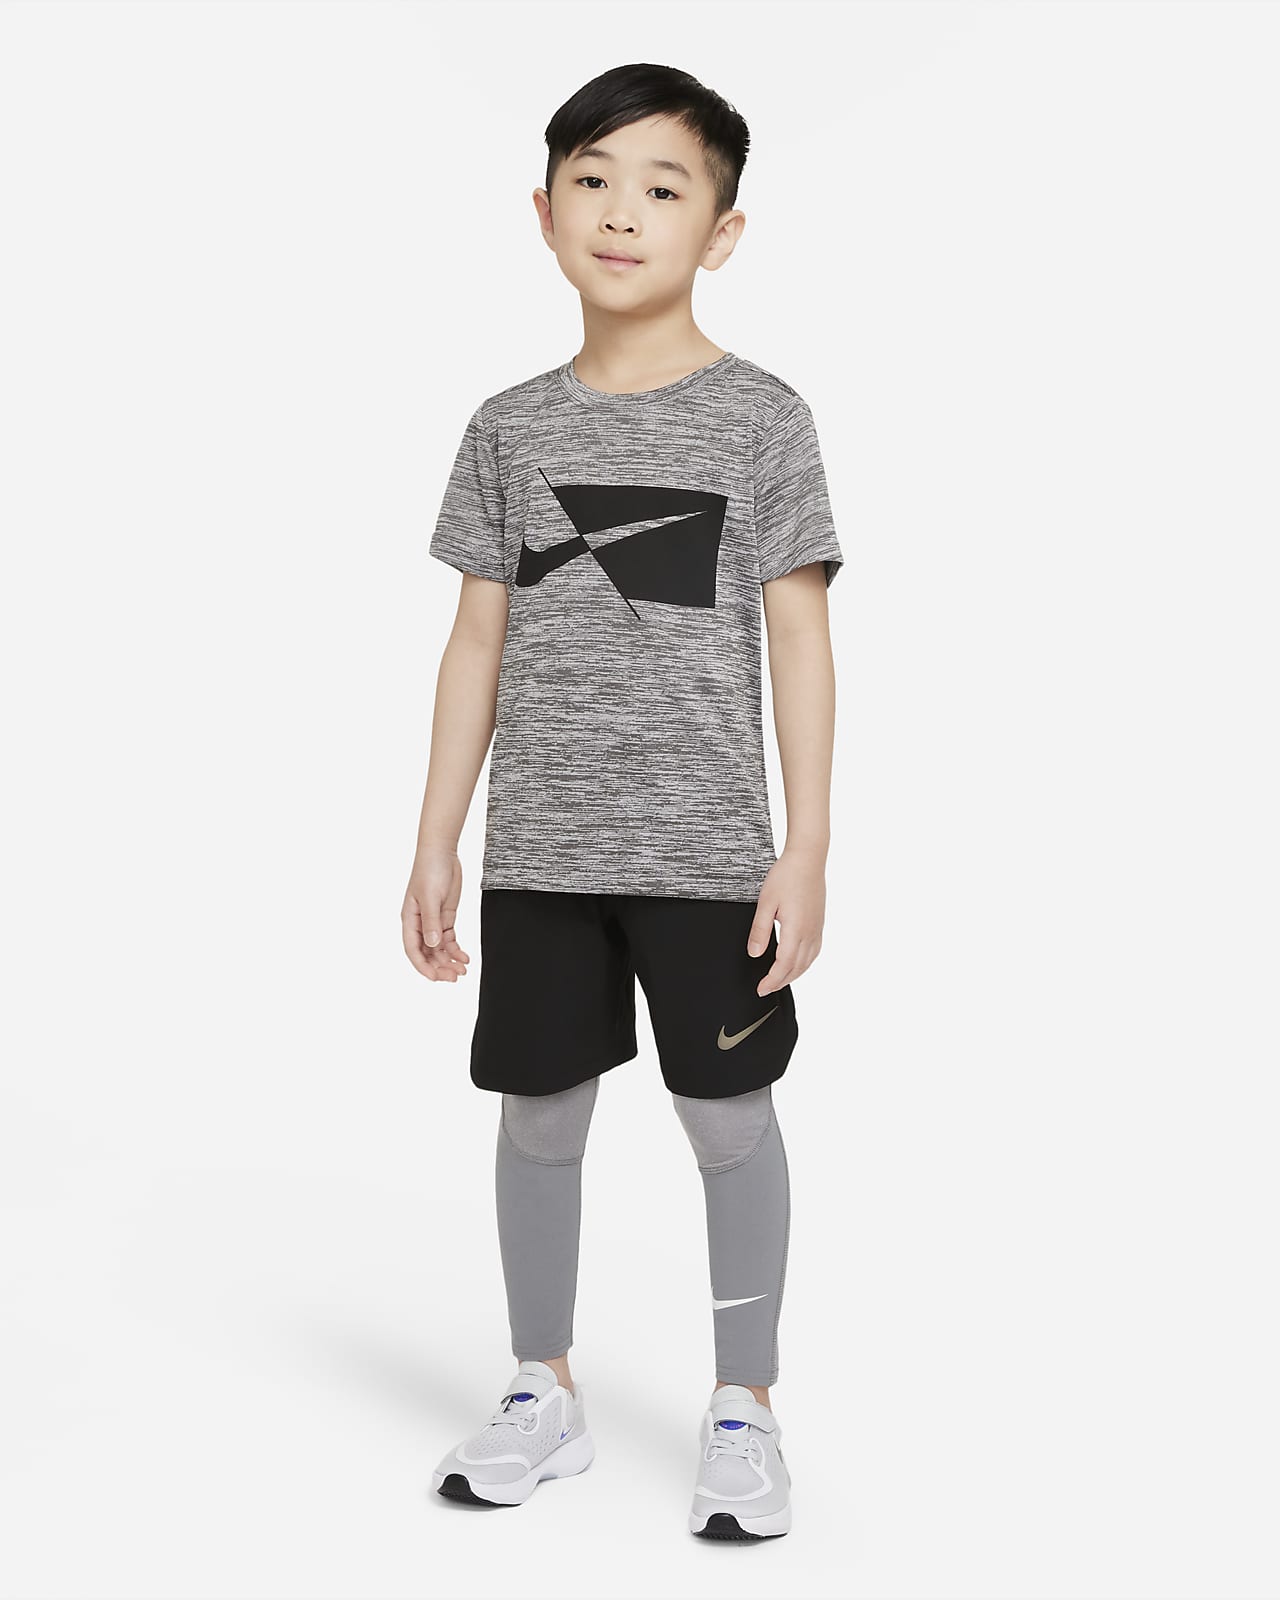 Mallas para niños talla pequeña Nike.com